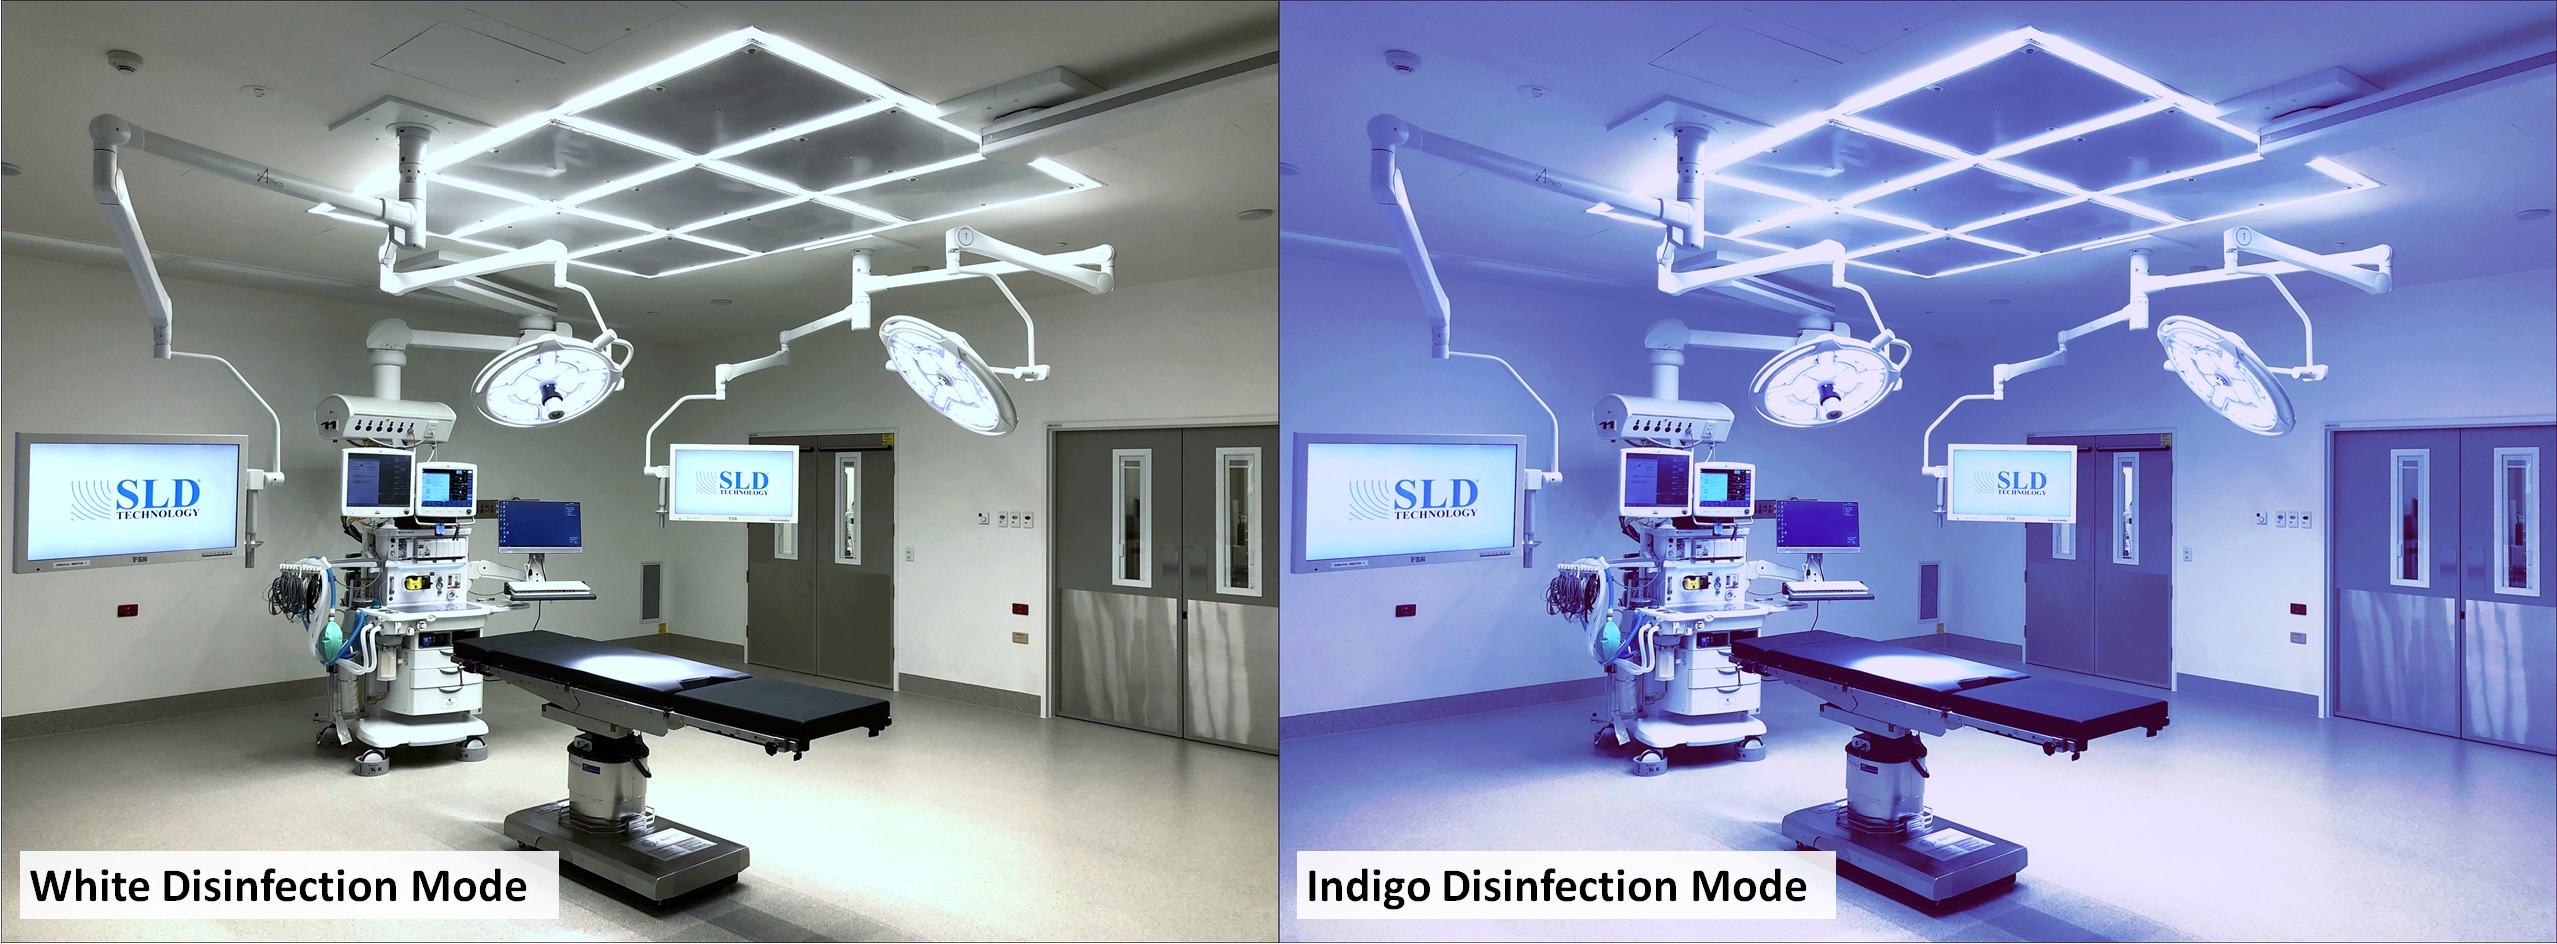 Indigo disinfection mode example